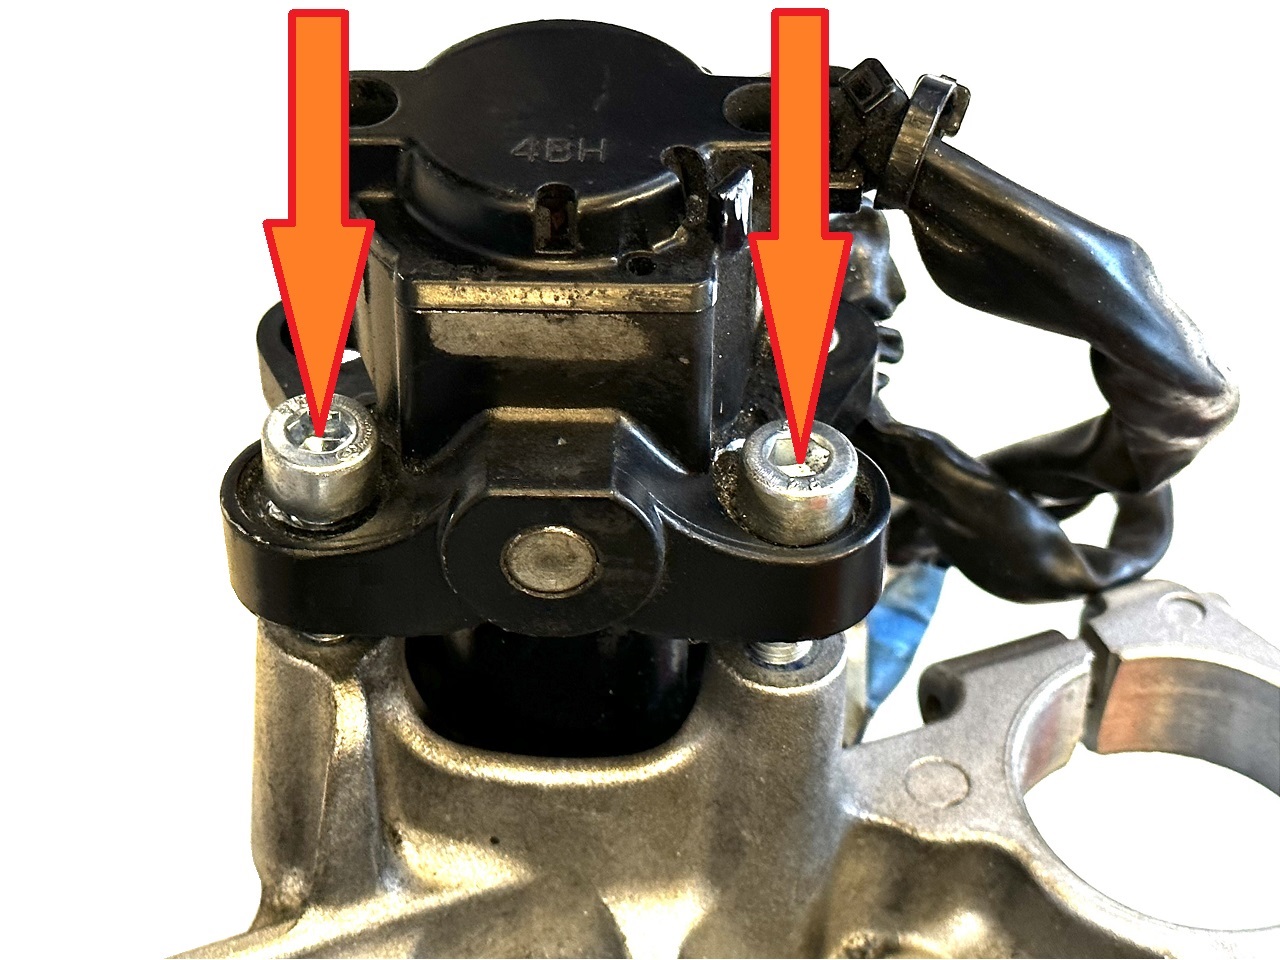 Servicio de extracción de pernos de seguridad/pernos a presión del inmovilizador de motocicletas Yamaha + pernos nuevos - Haga click en la imagen para cerrar